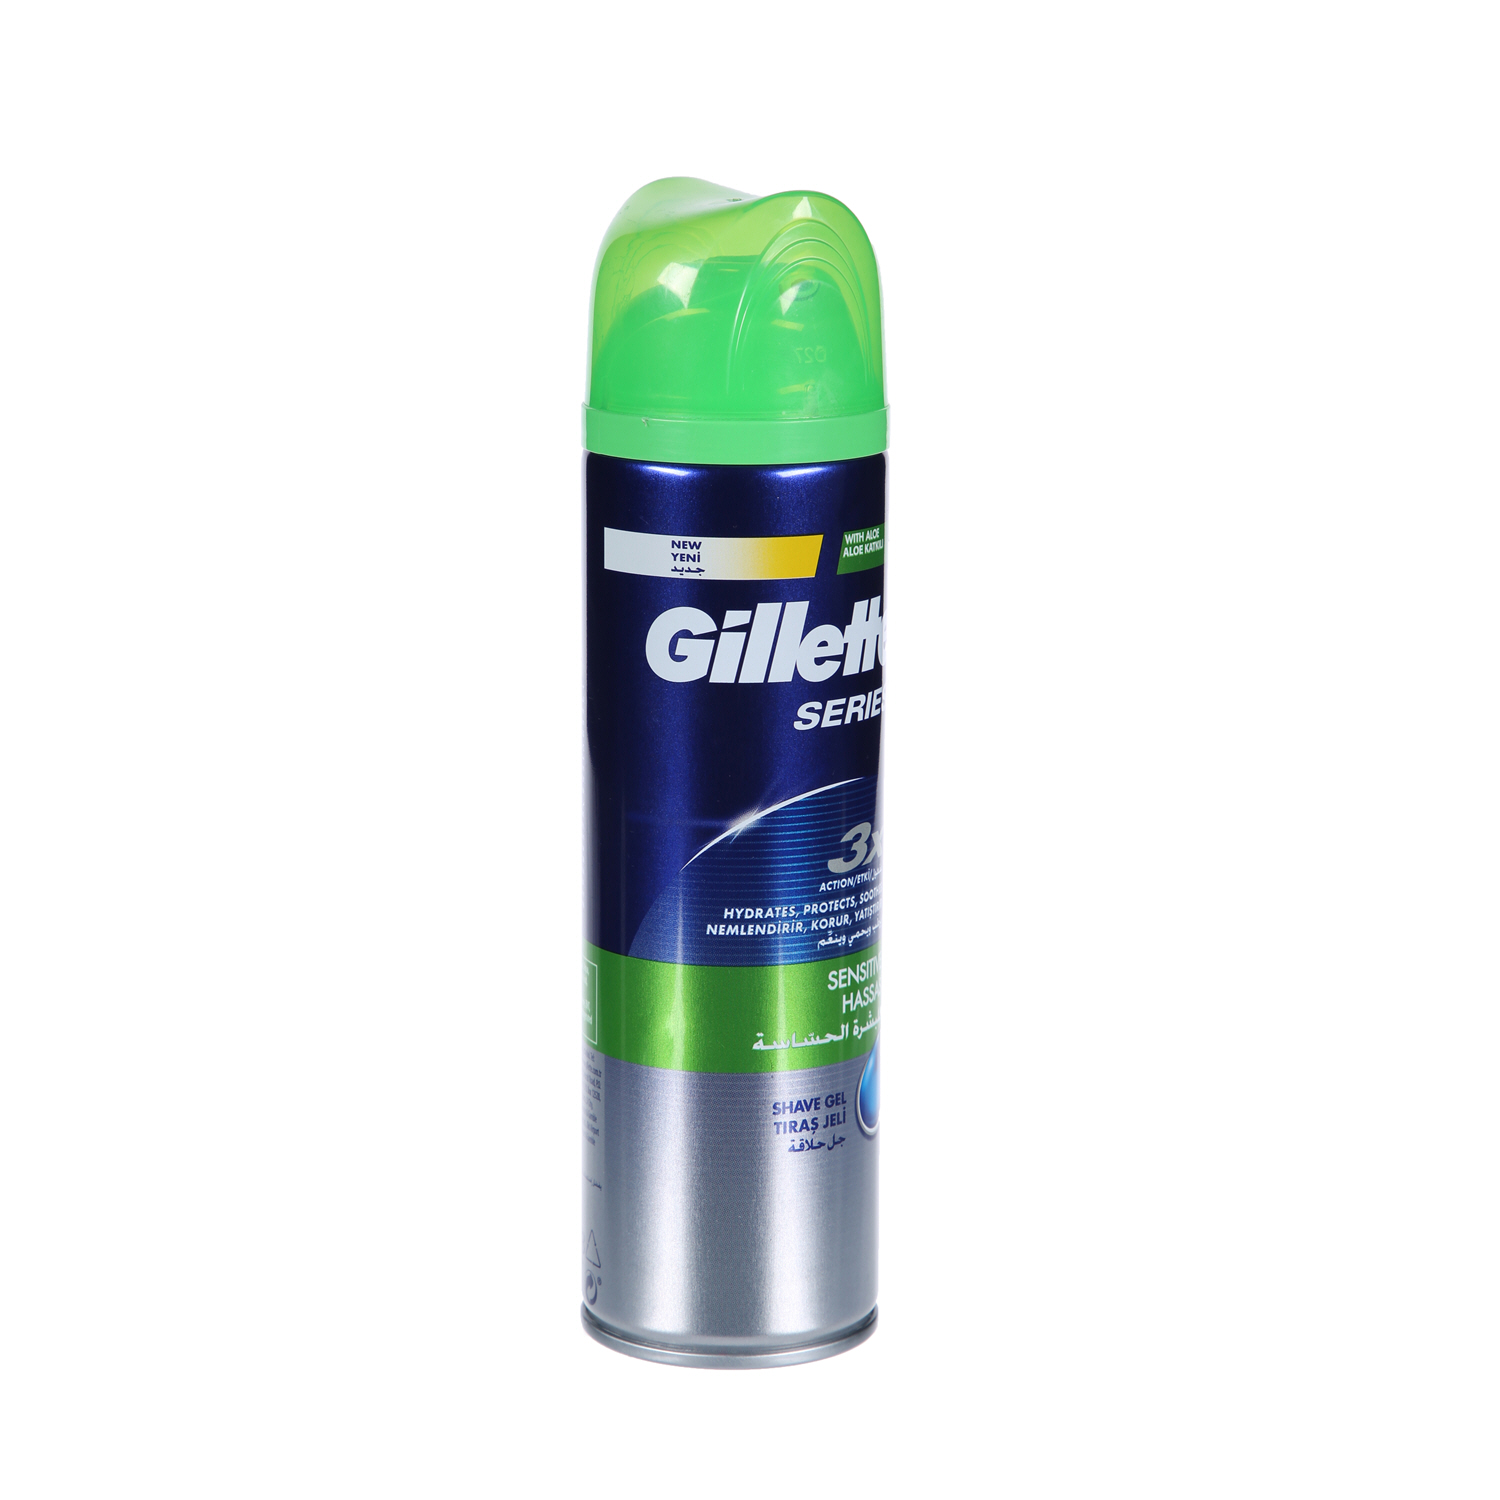 Gillette Sensitive Shave Gel 200ml